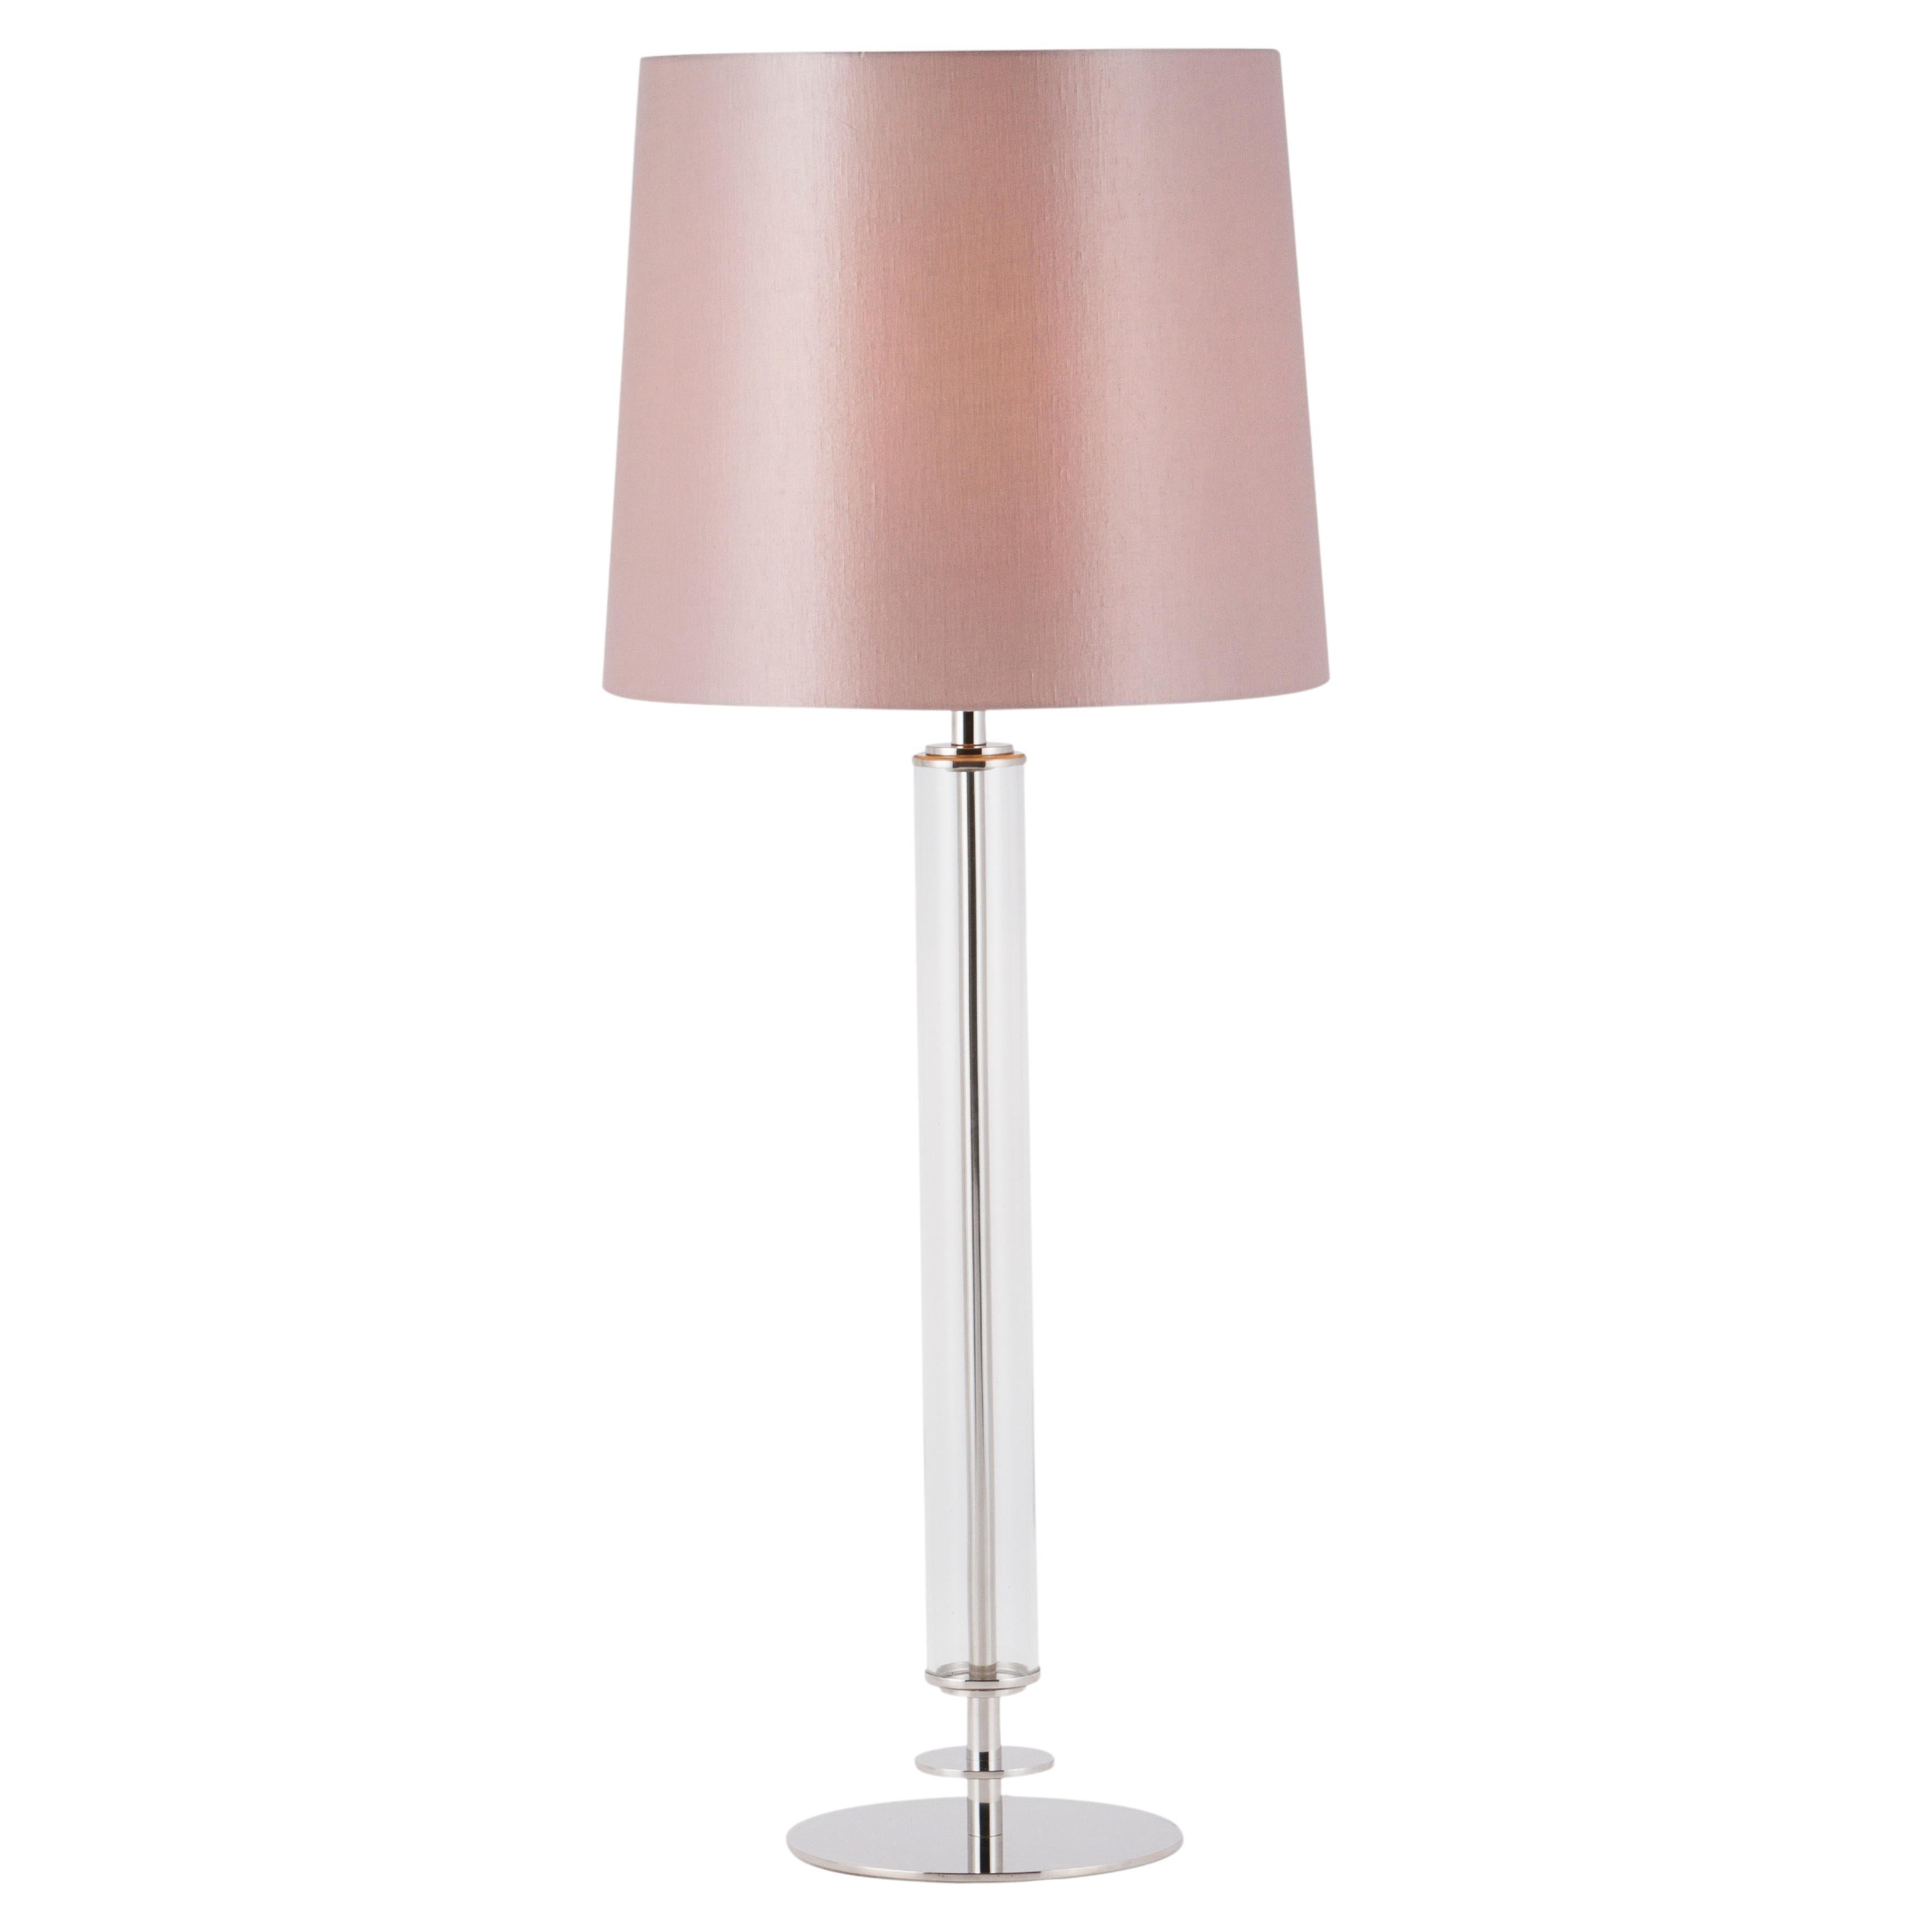 Lampe de bureau ananas, lampe de table Dumont, abat-jour rose, fabriquée à la main au Portugal